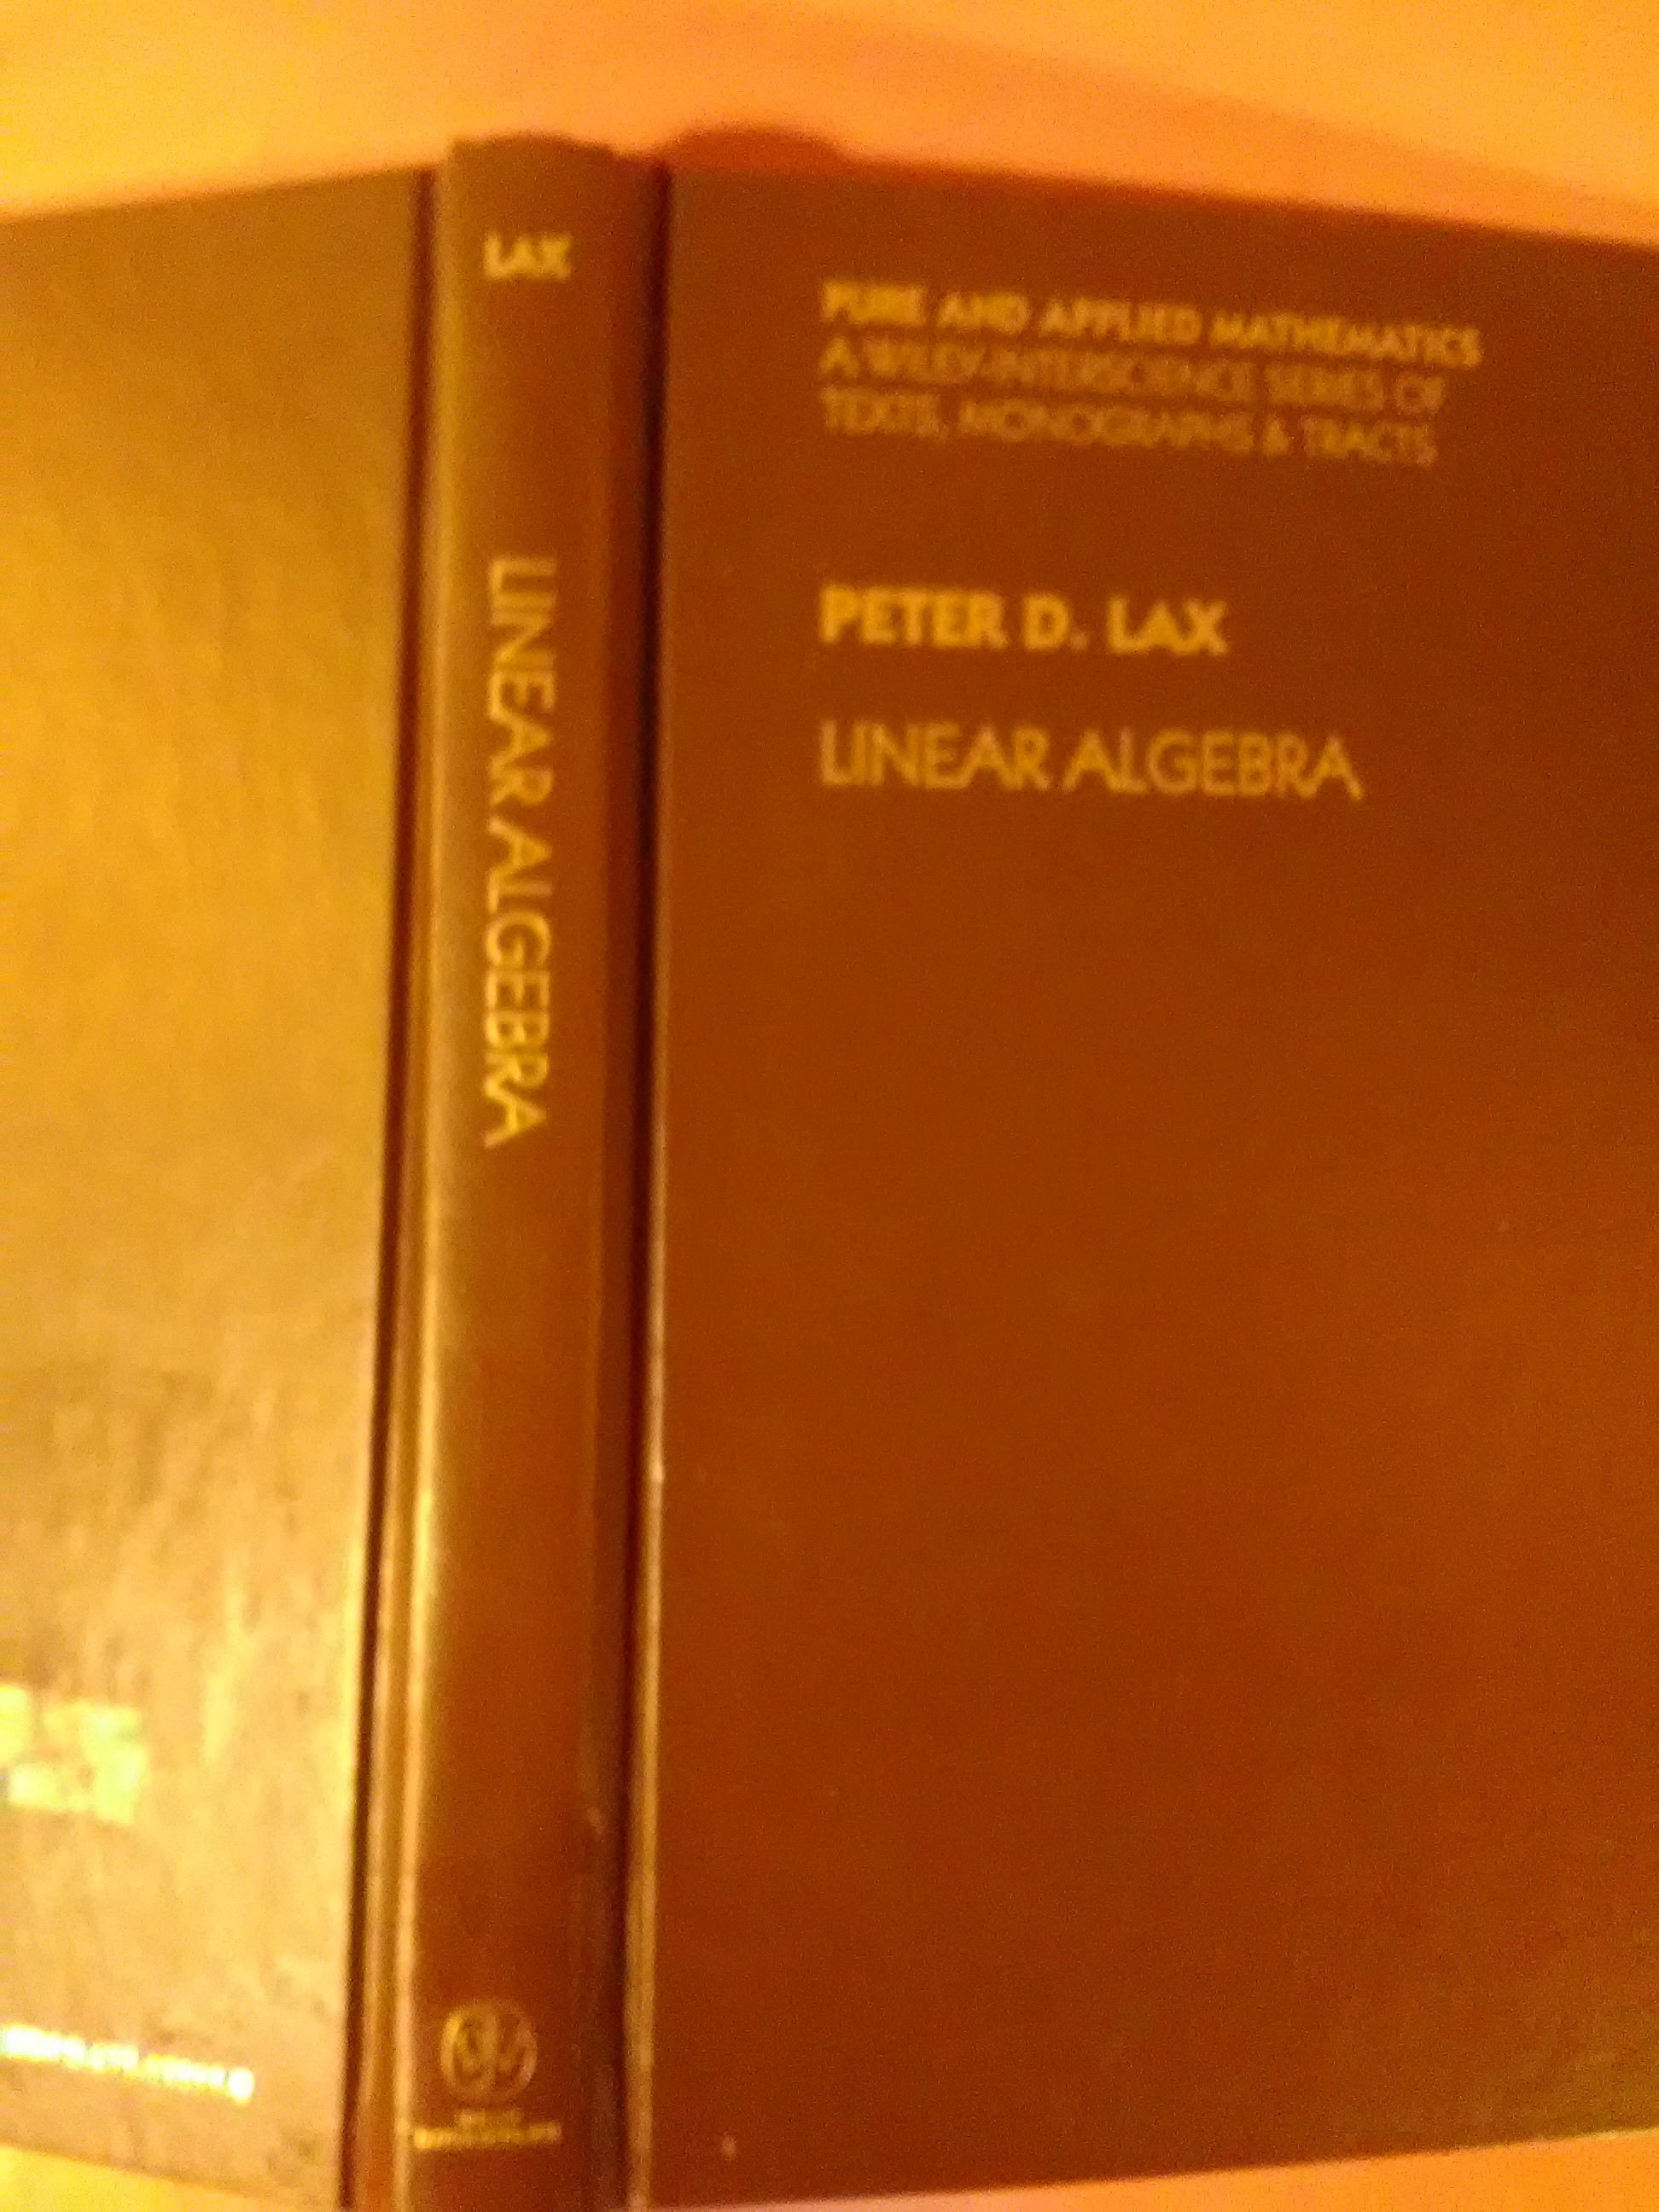 Linear Algebra - Lax, Peter D.